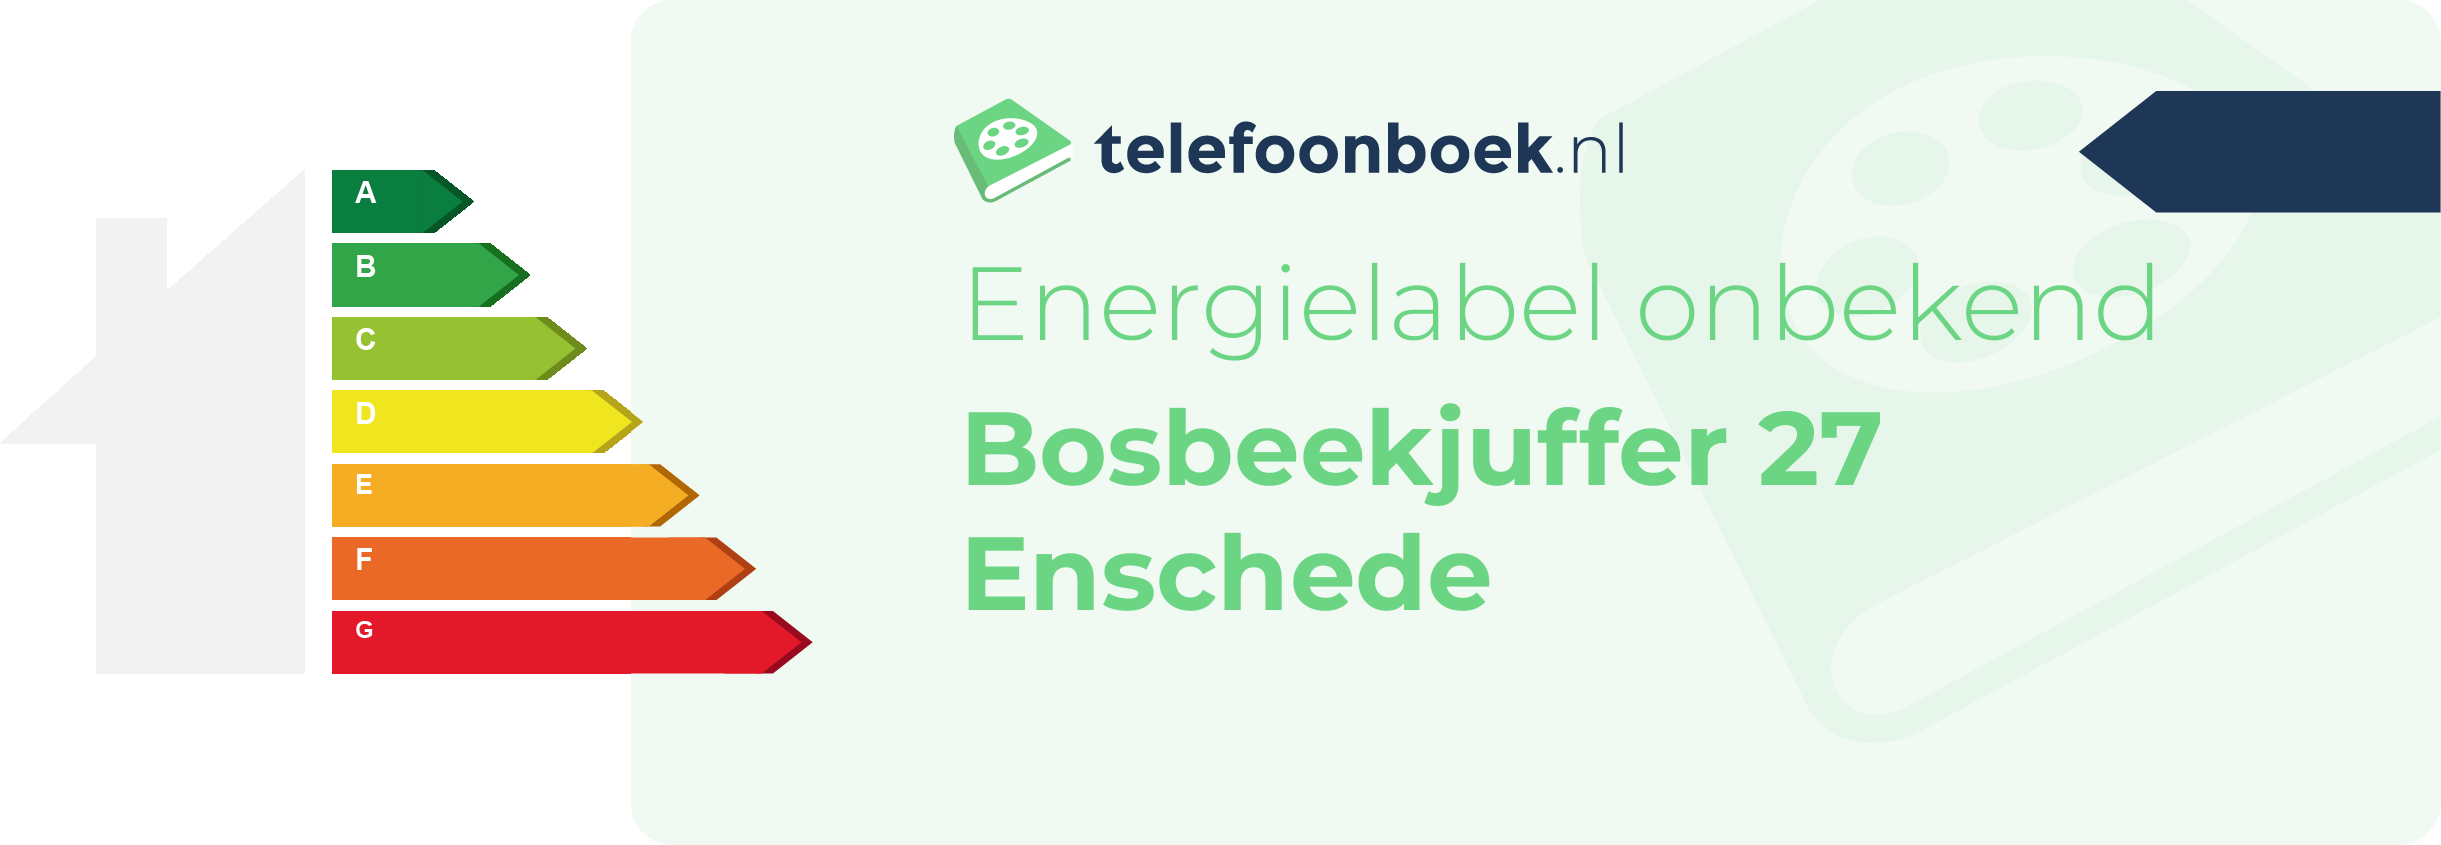 Energielabel Bosbeekjuffer 27 Enschede